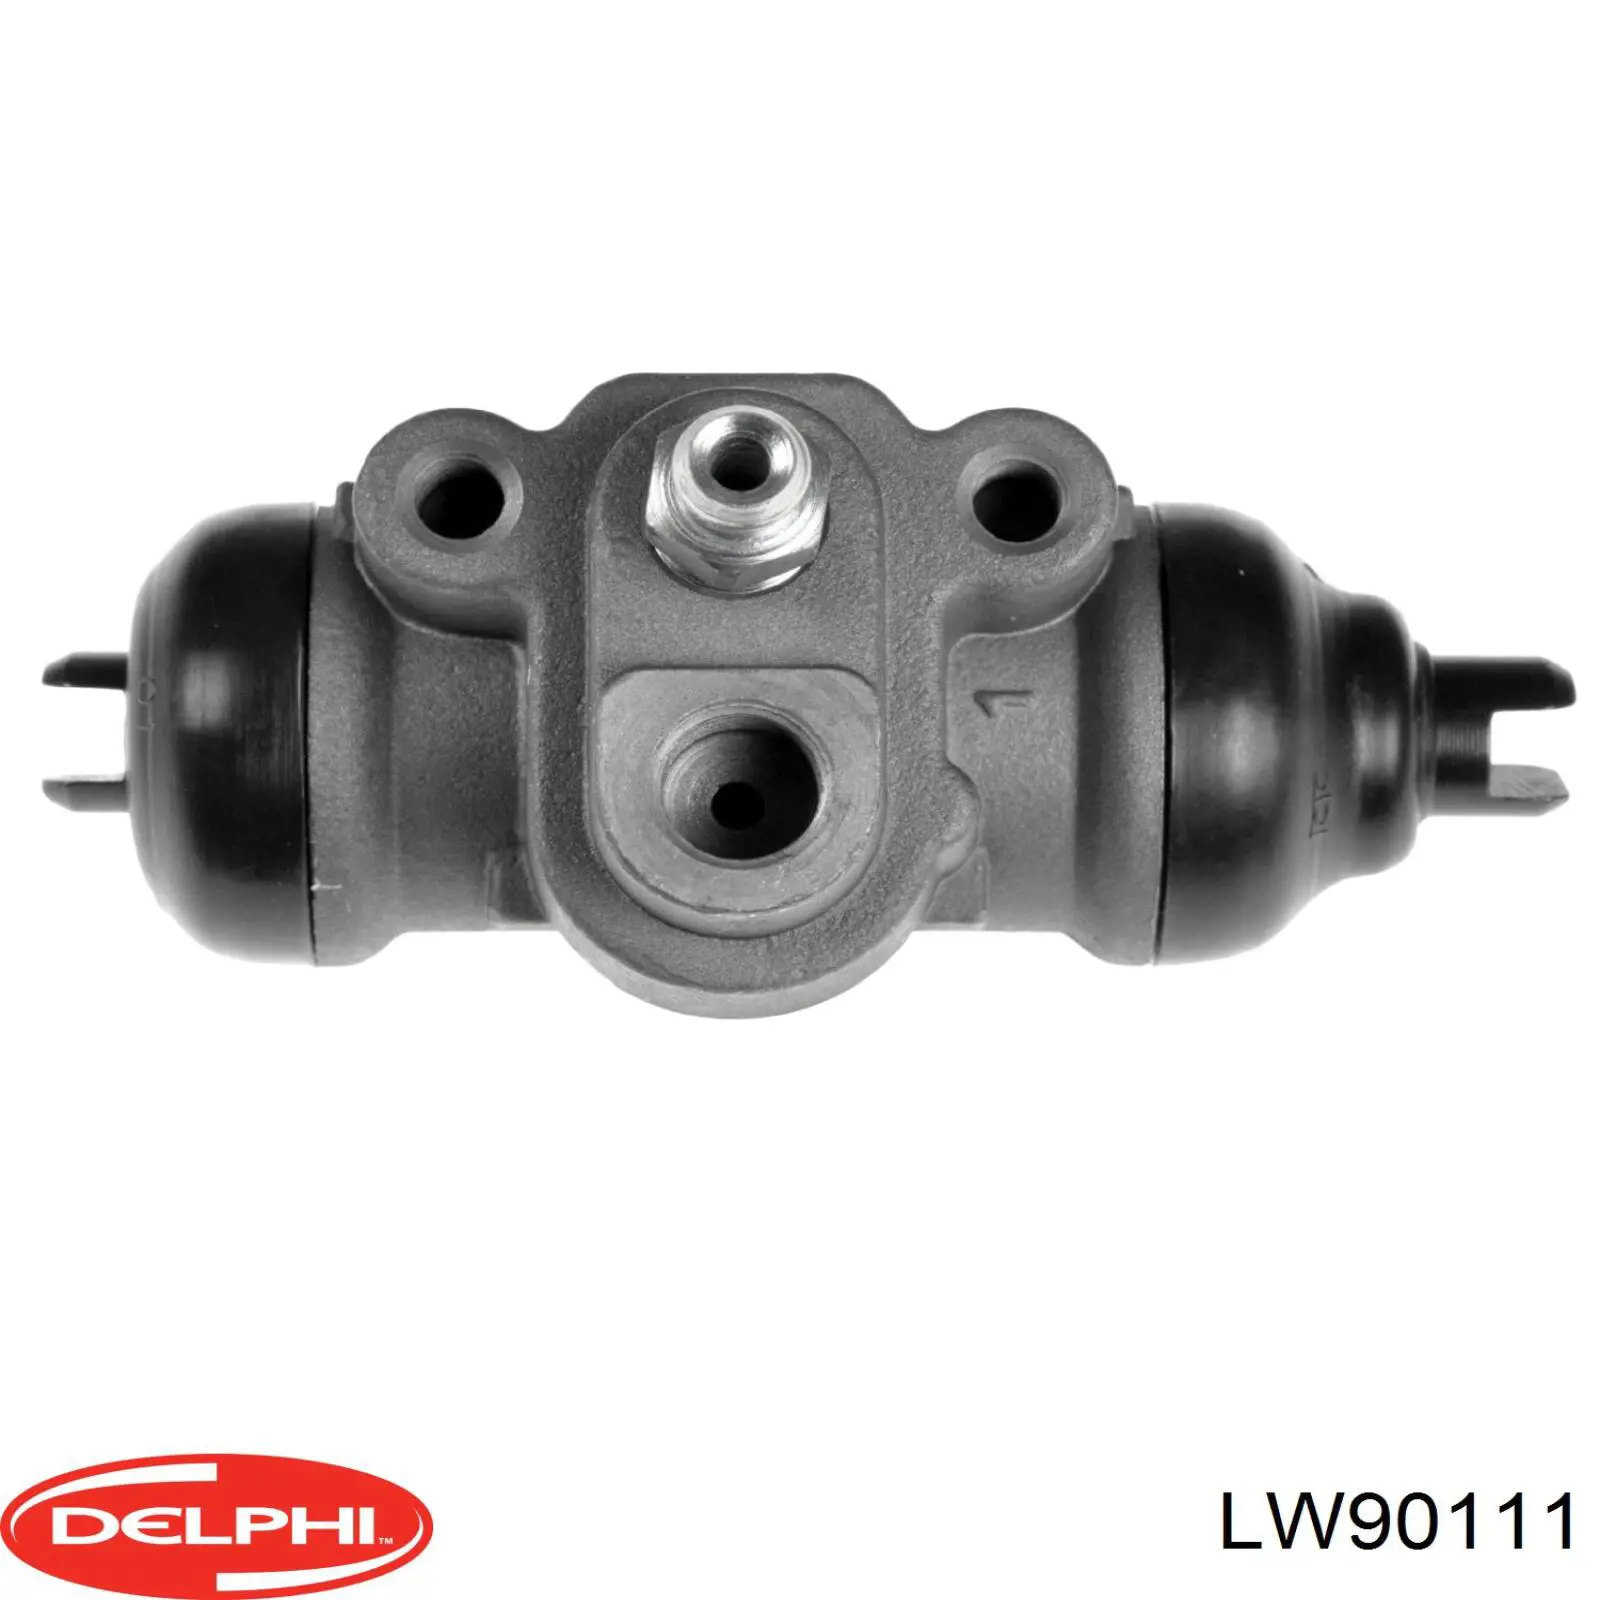 LW90111 Delphi cilindro de freno de rueda trasero